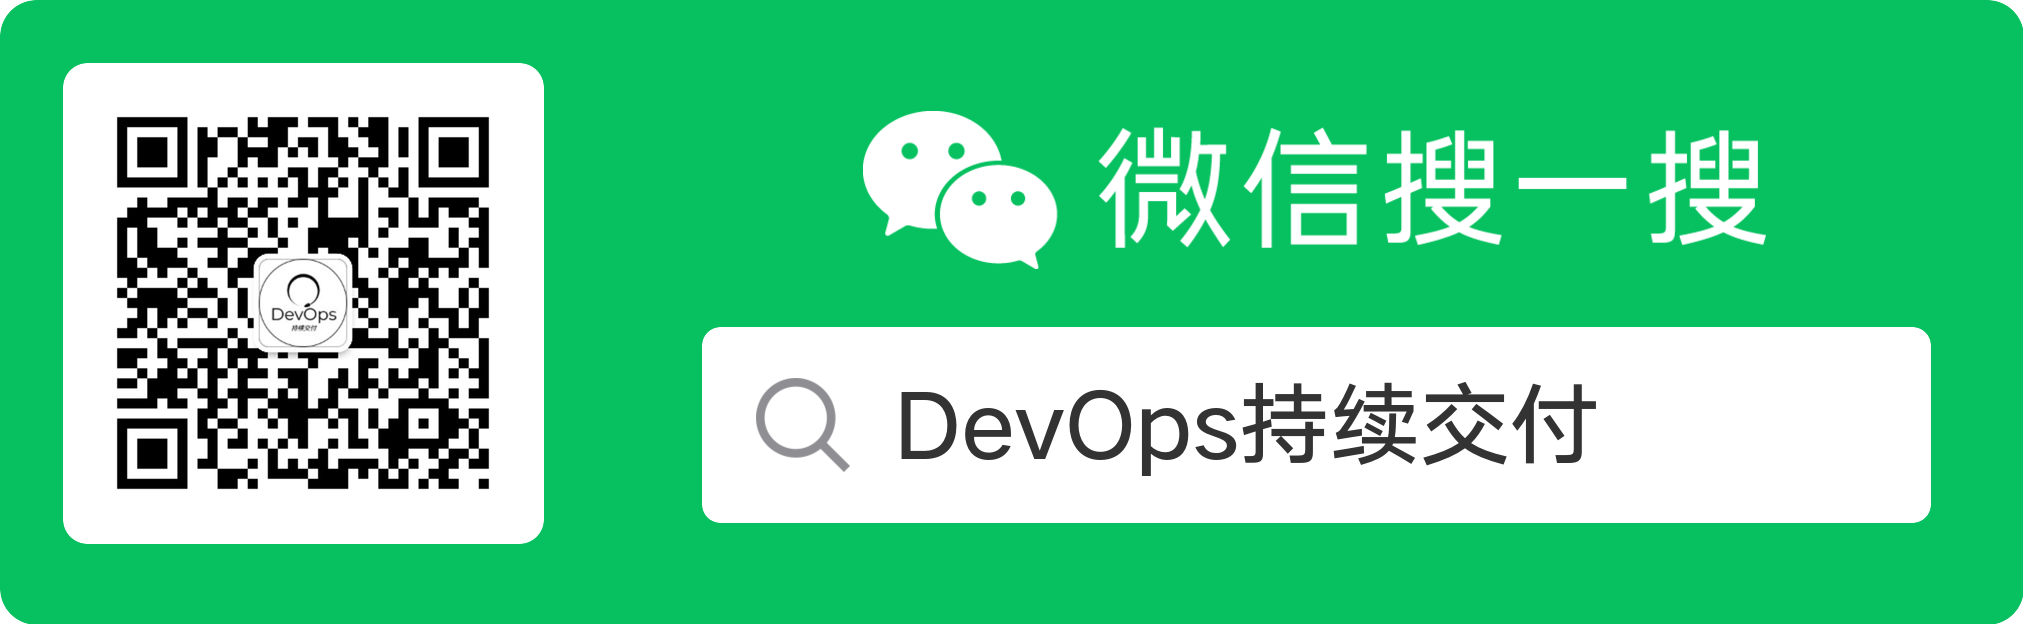 DevOps持续交付公众号ID:devopscd